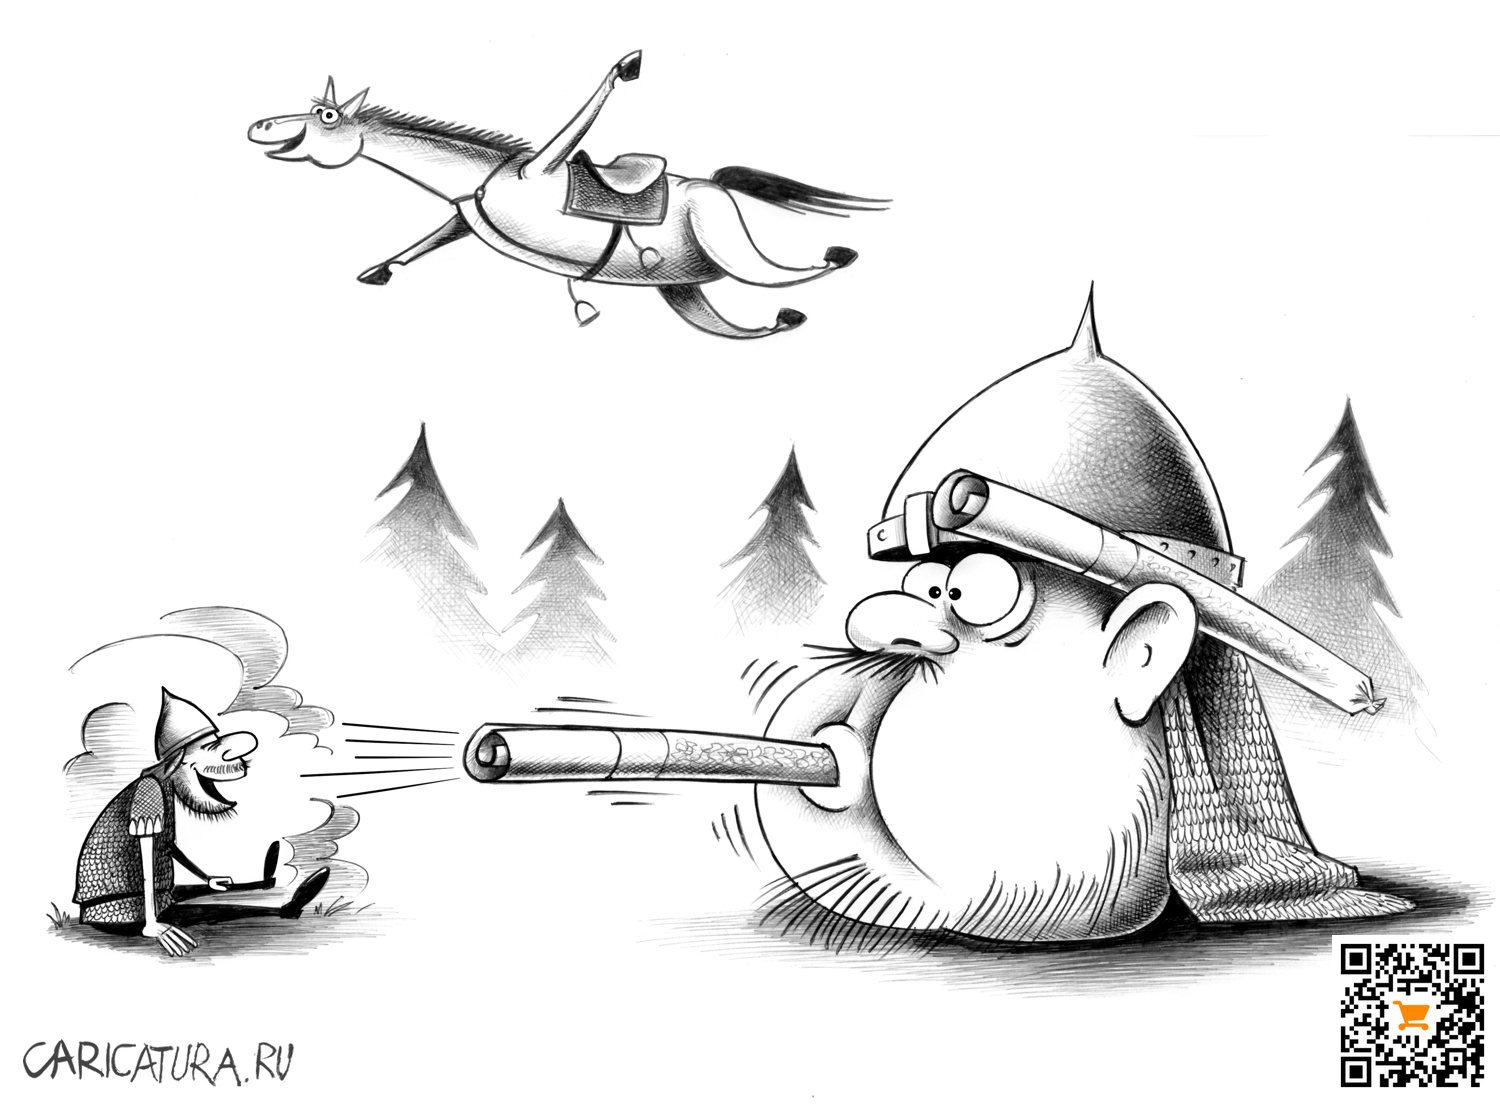 Карикатура "Дунул", Сергей Корсун